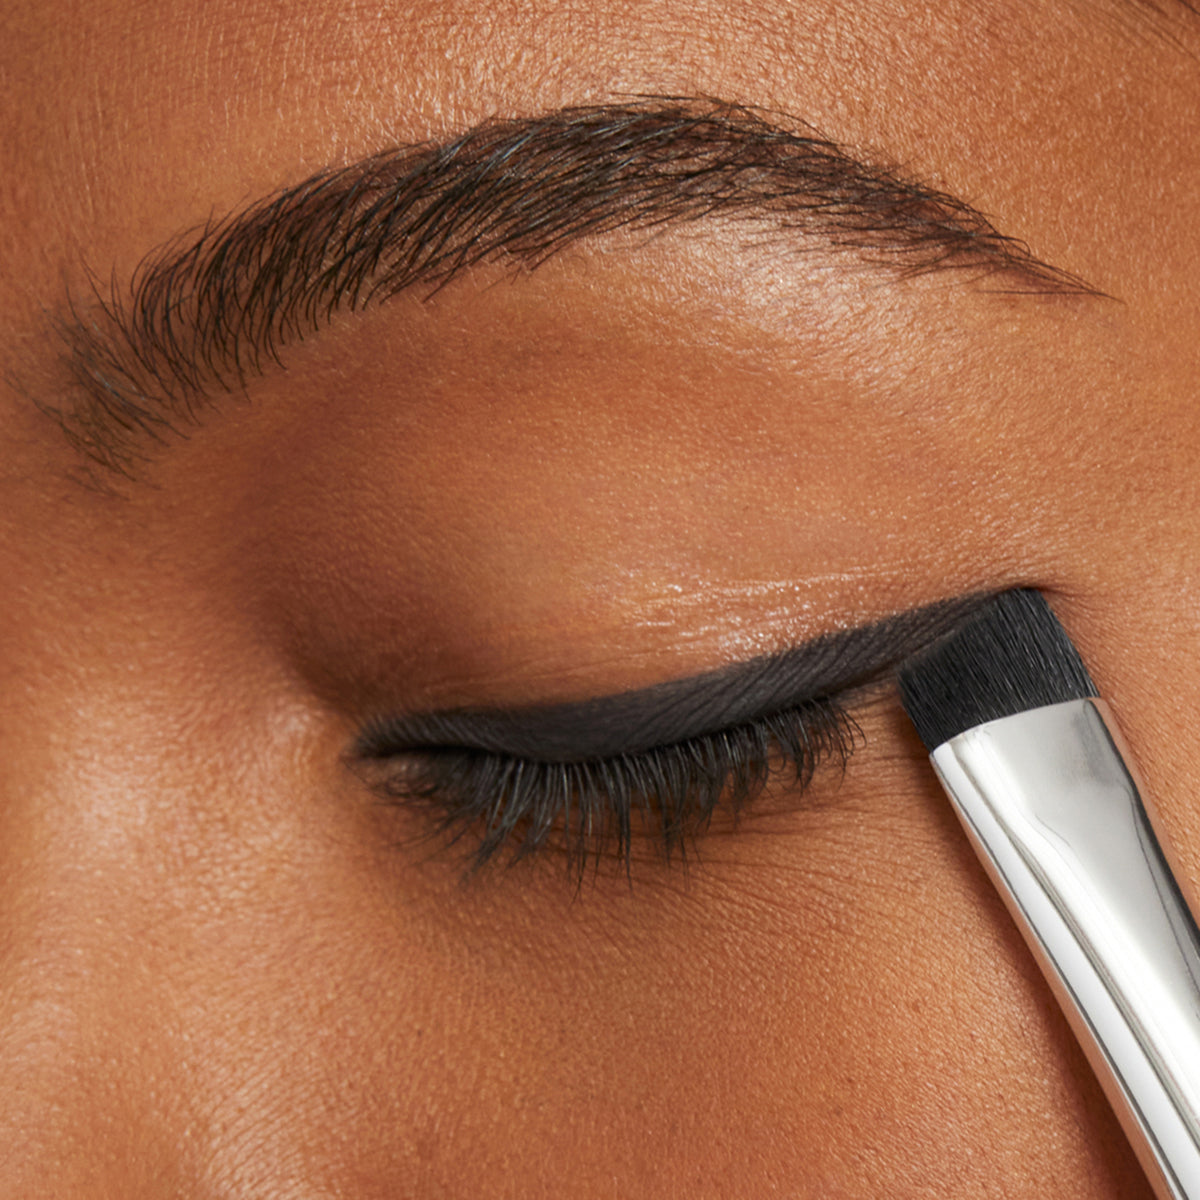 Model applying LIcorice eye shadow as eyeliner